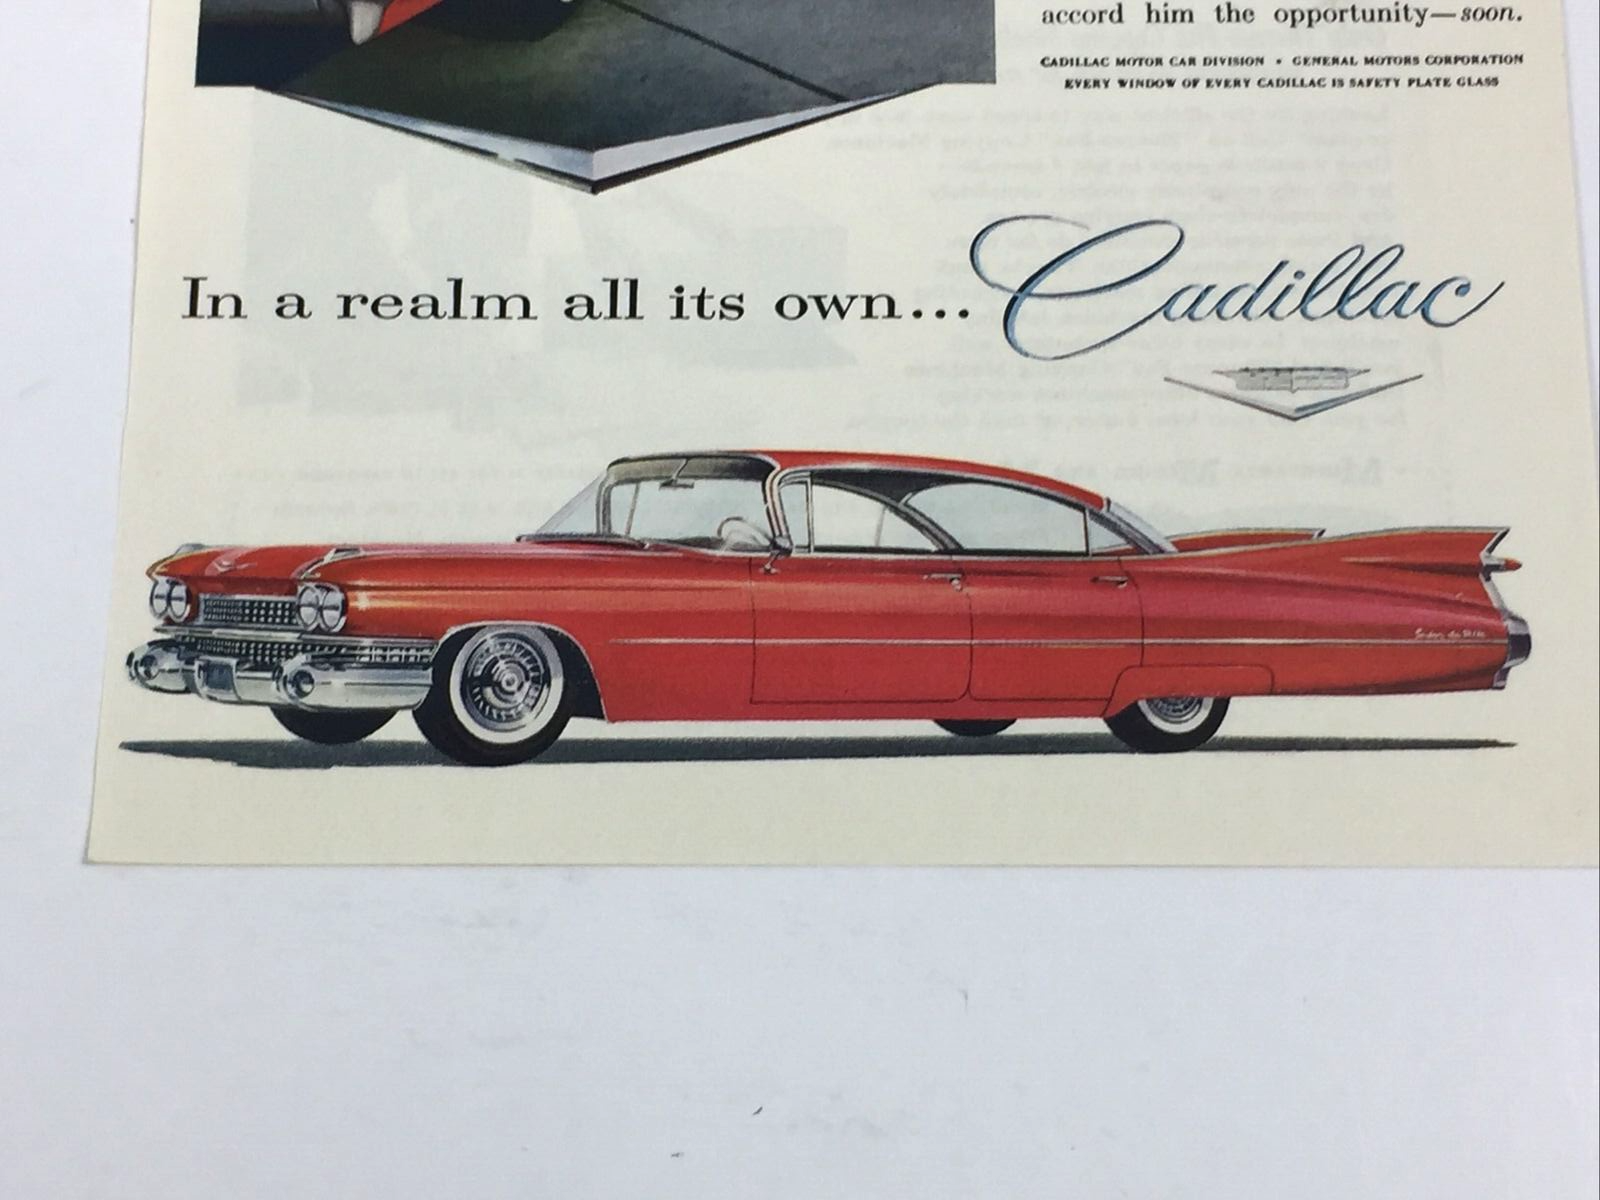 Primary image for Vintage 1959 Cadillac 4 Door Hardtop Airstream Bumper Trailers Original Print Ad